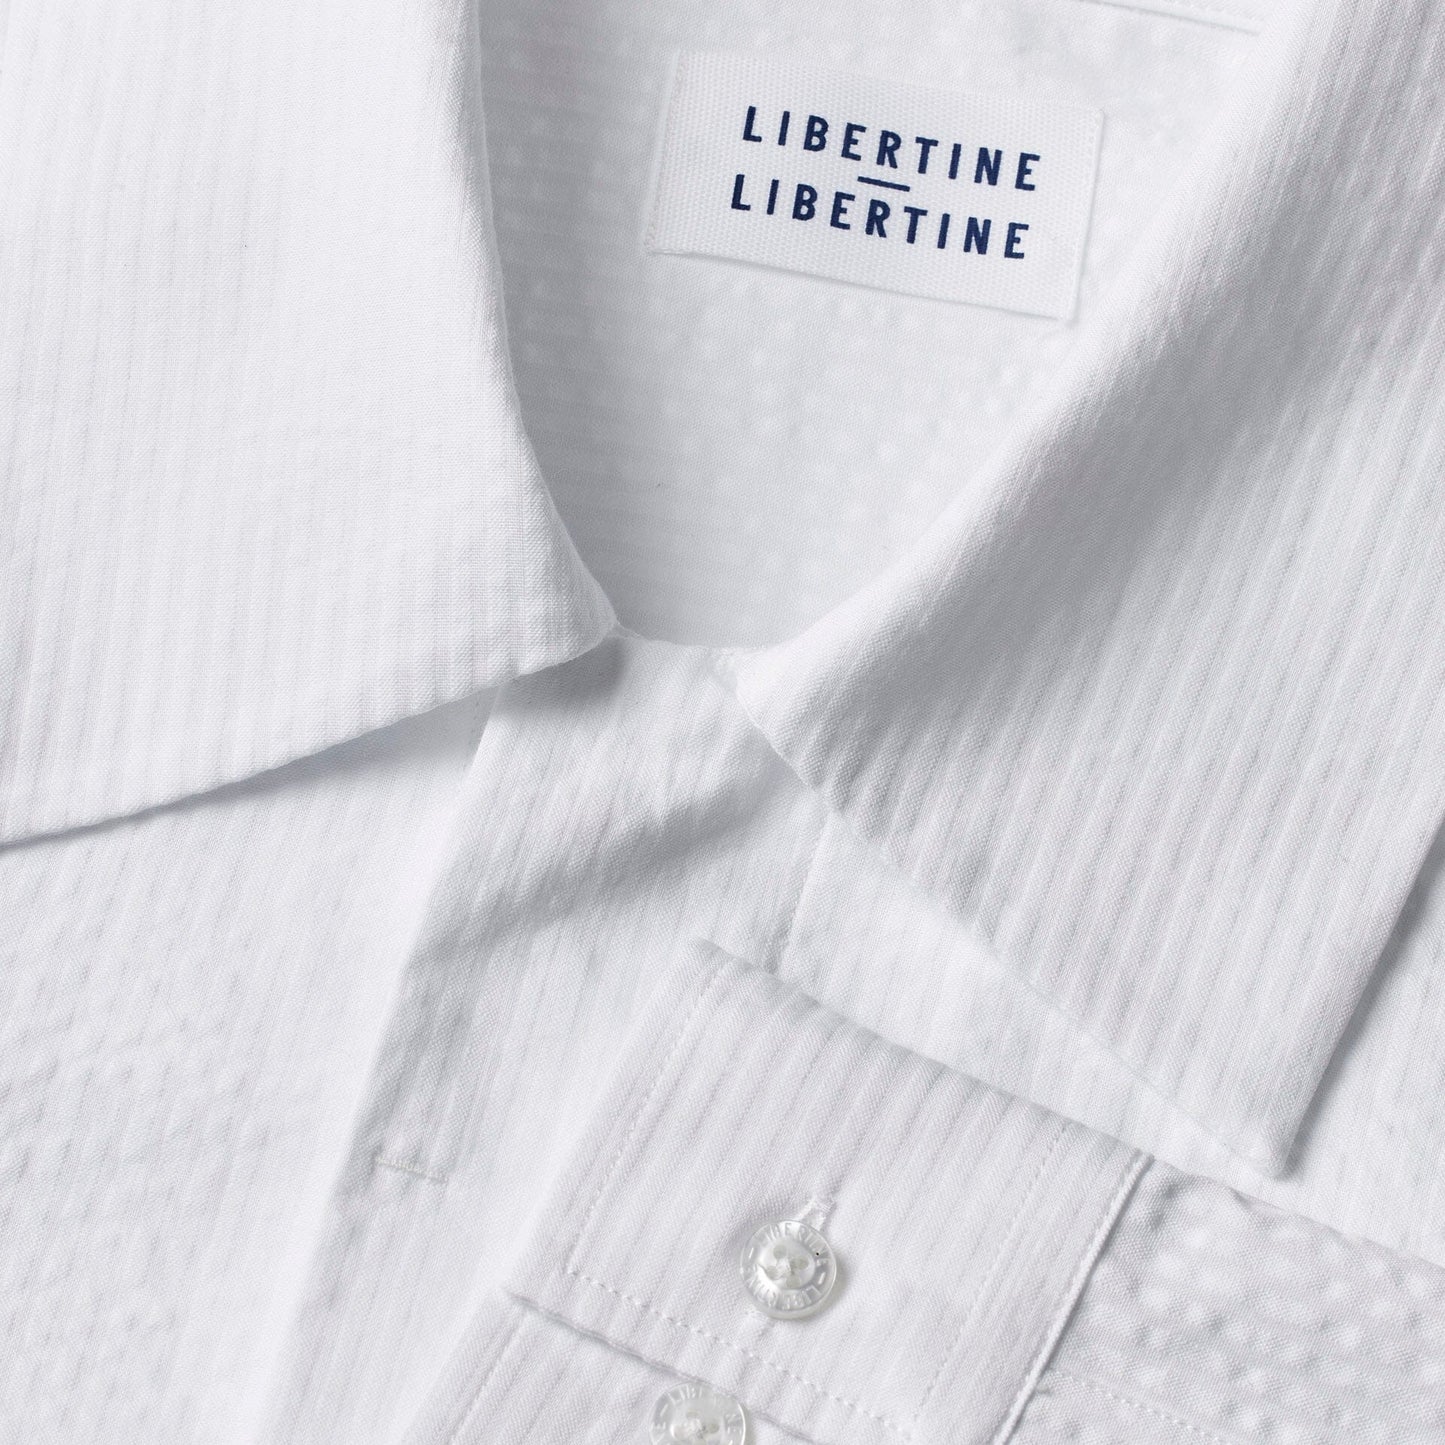 Libertine-Libertine Domain Shirt - White Shirt Libertine-Libertine 